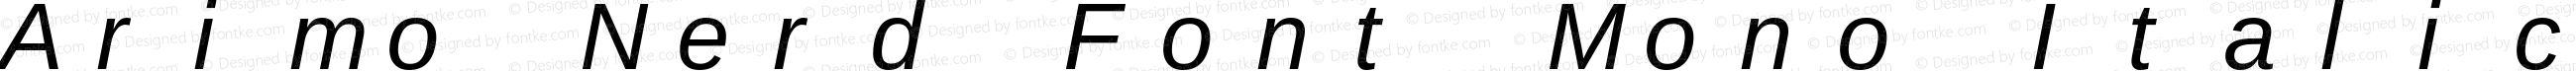 Arimo Italic Nerd Font Complete Mono